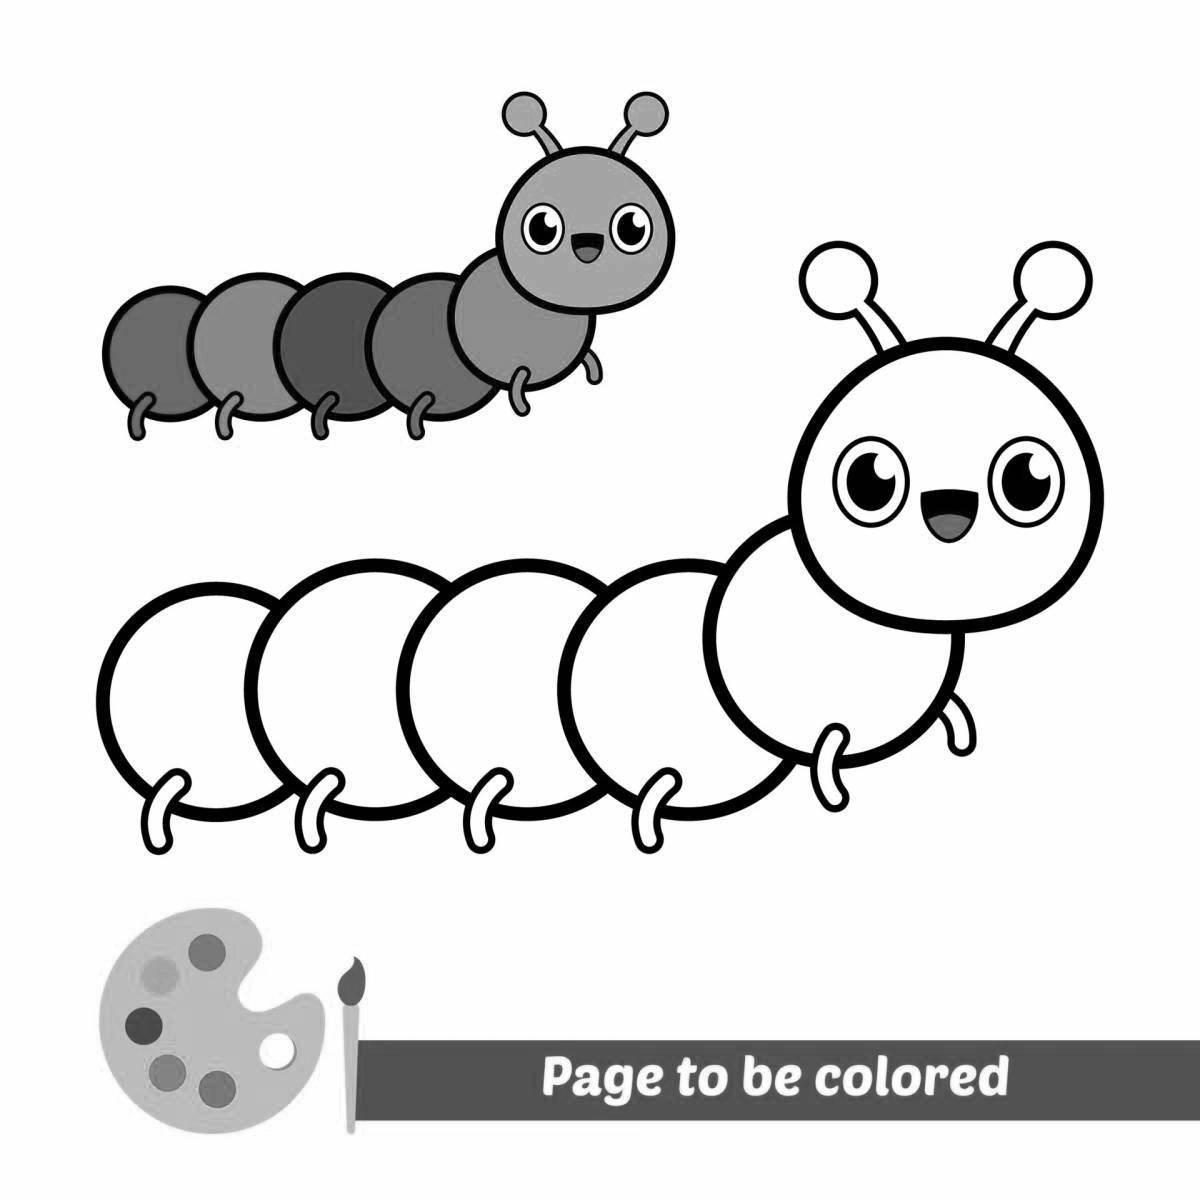 Fun coloring caterpillar for preschoolers